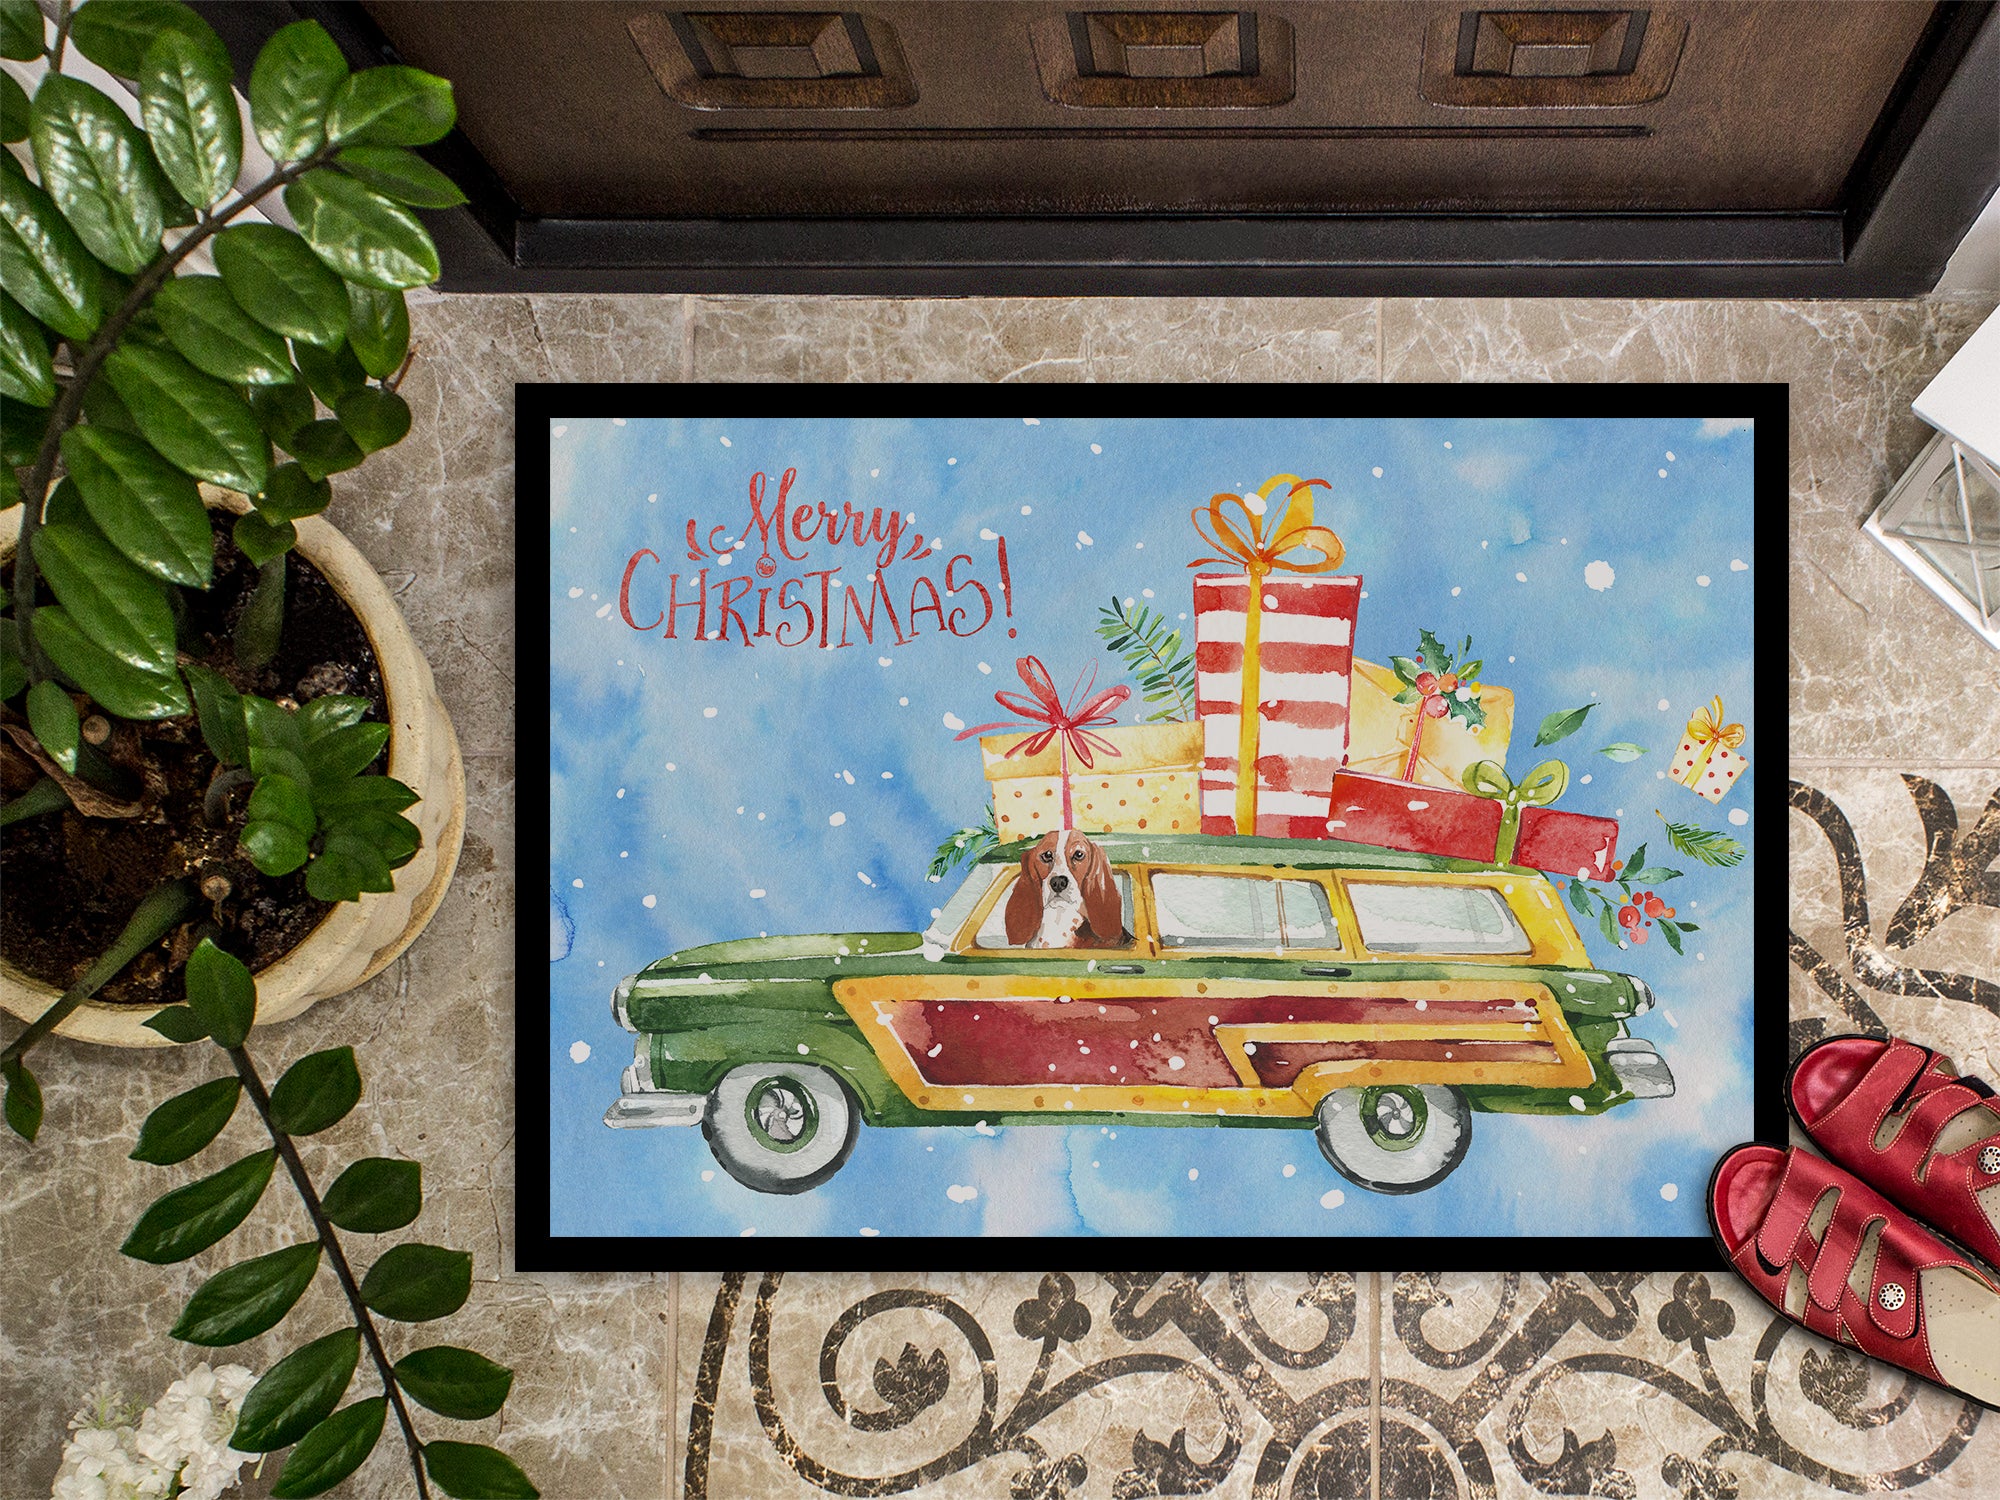 Merry Christmas Basset Hound Indoor or Outdoor Mat 18x27 CK2393MAT - the-store.com